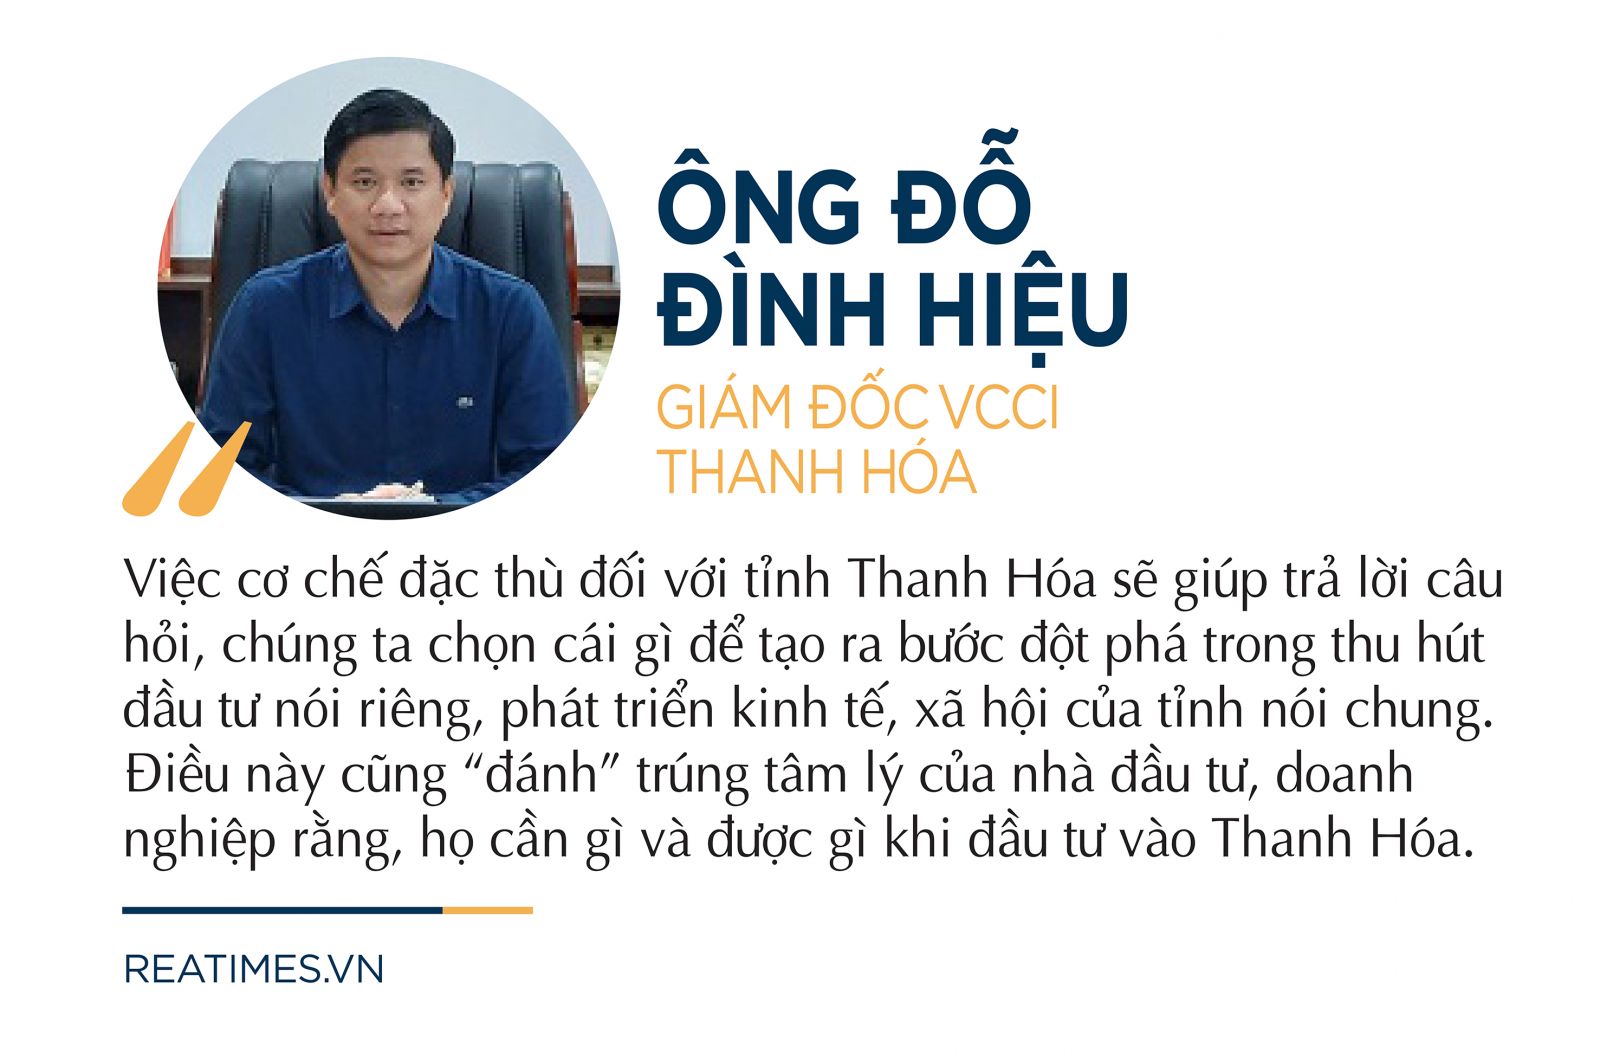 Phát triển tỉnh Thanh Hóa